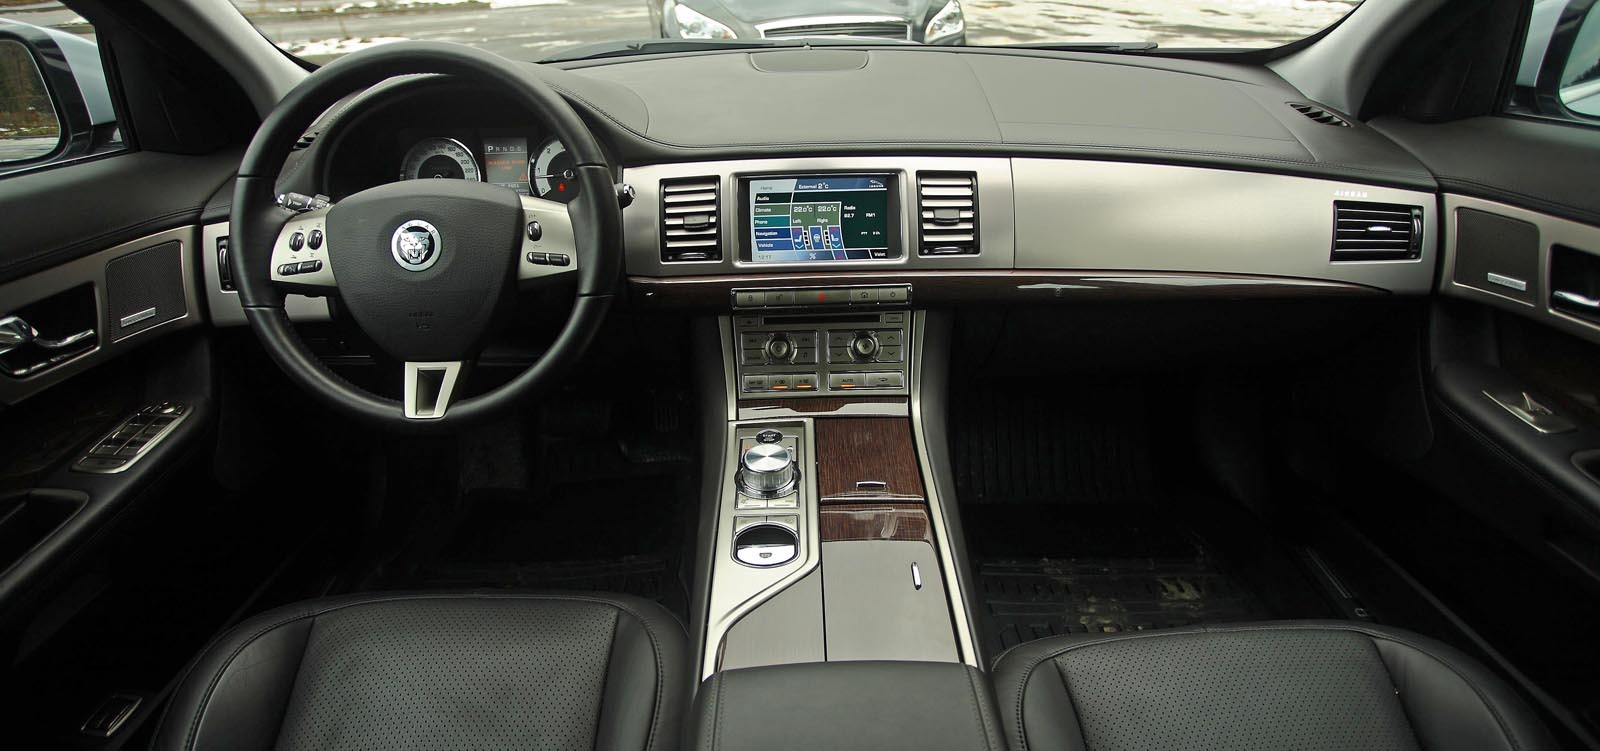 Interiorul lui Jaguar XF mizeaza pe un stil mai simplist si relativ rece, dedicat sportivilor